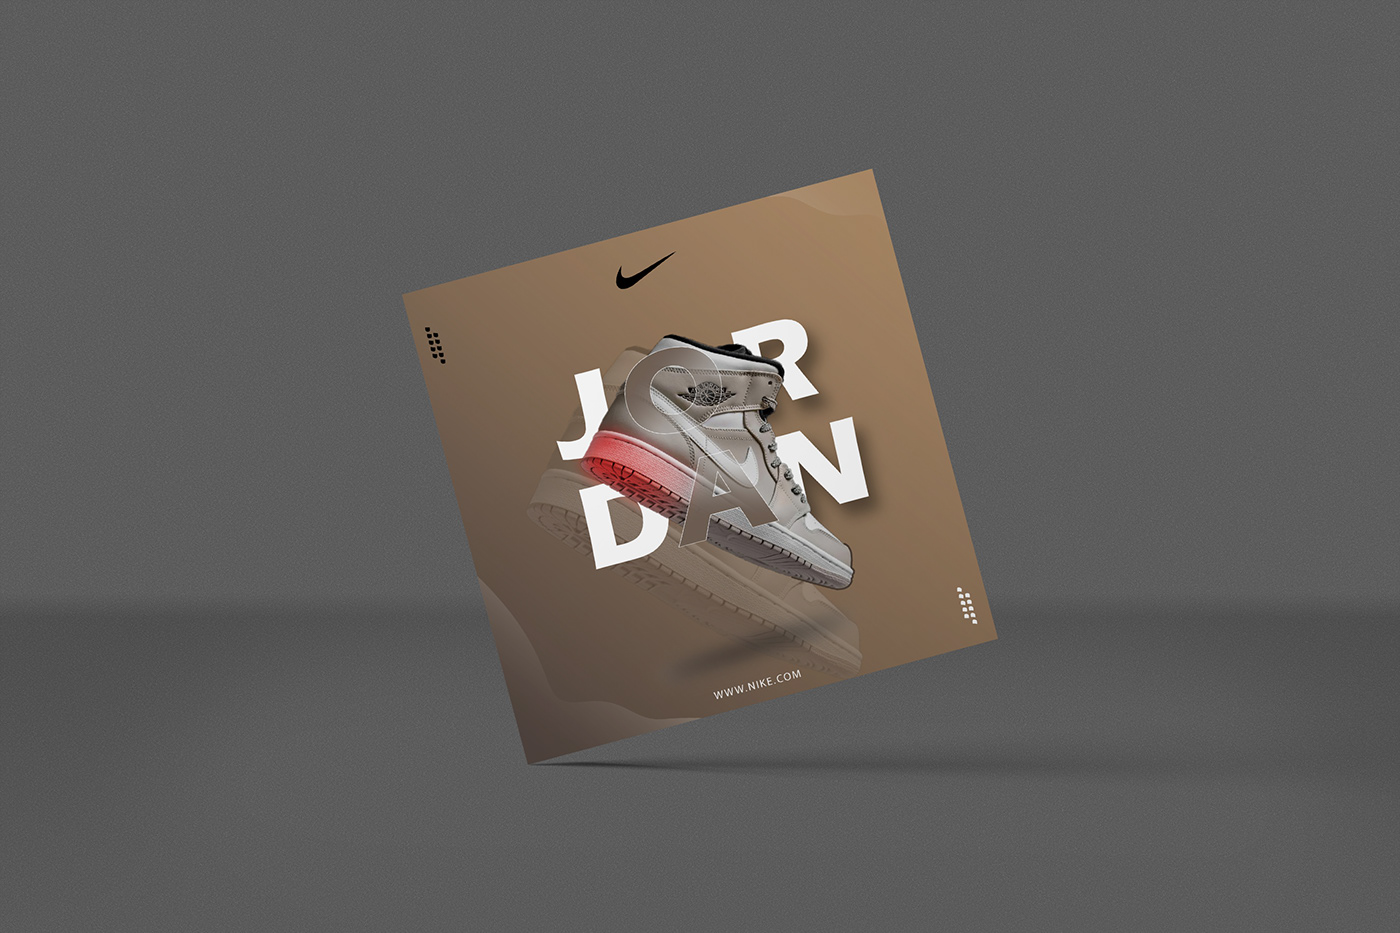 ILLUSTRATION  photoshop shoes jordan Mockup Brand Design Graphic Designer Social media post ads poster